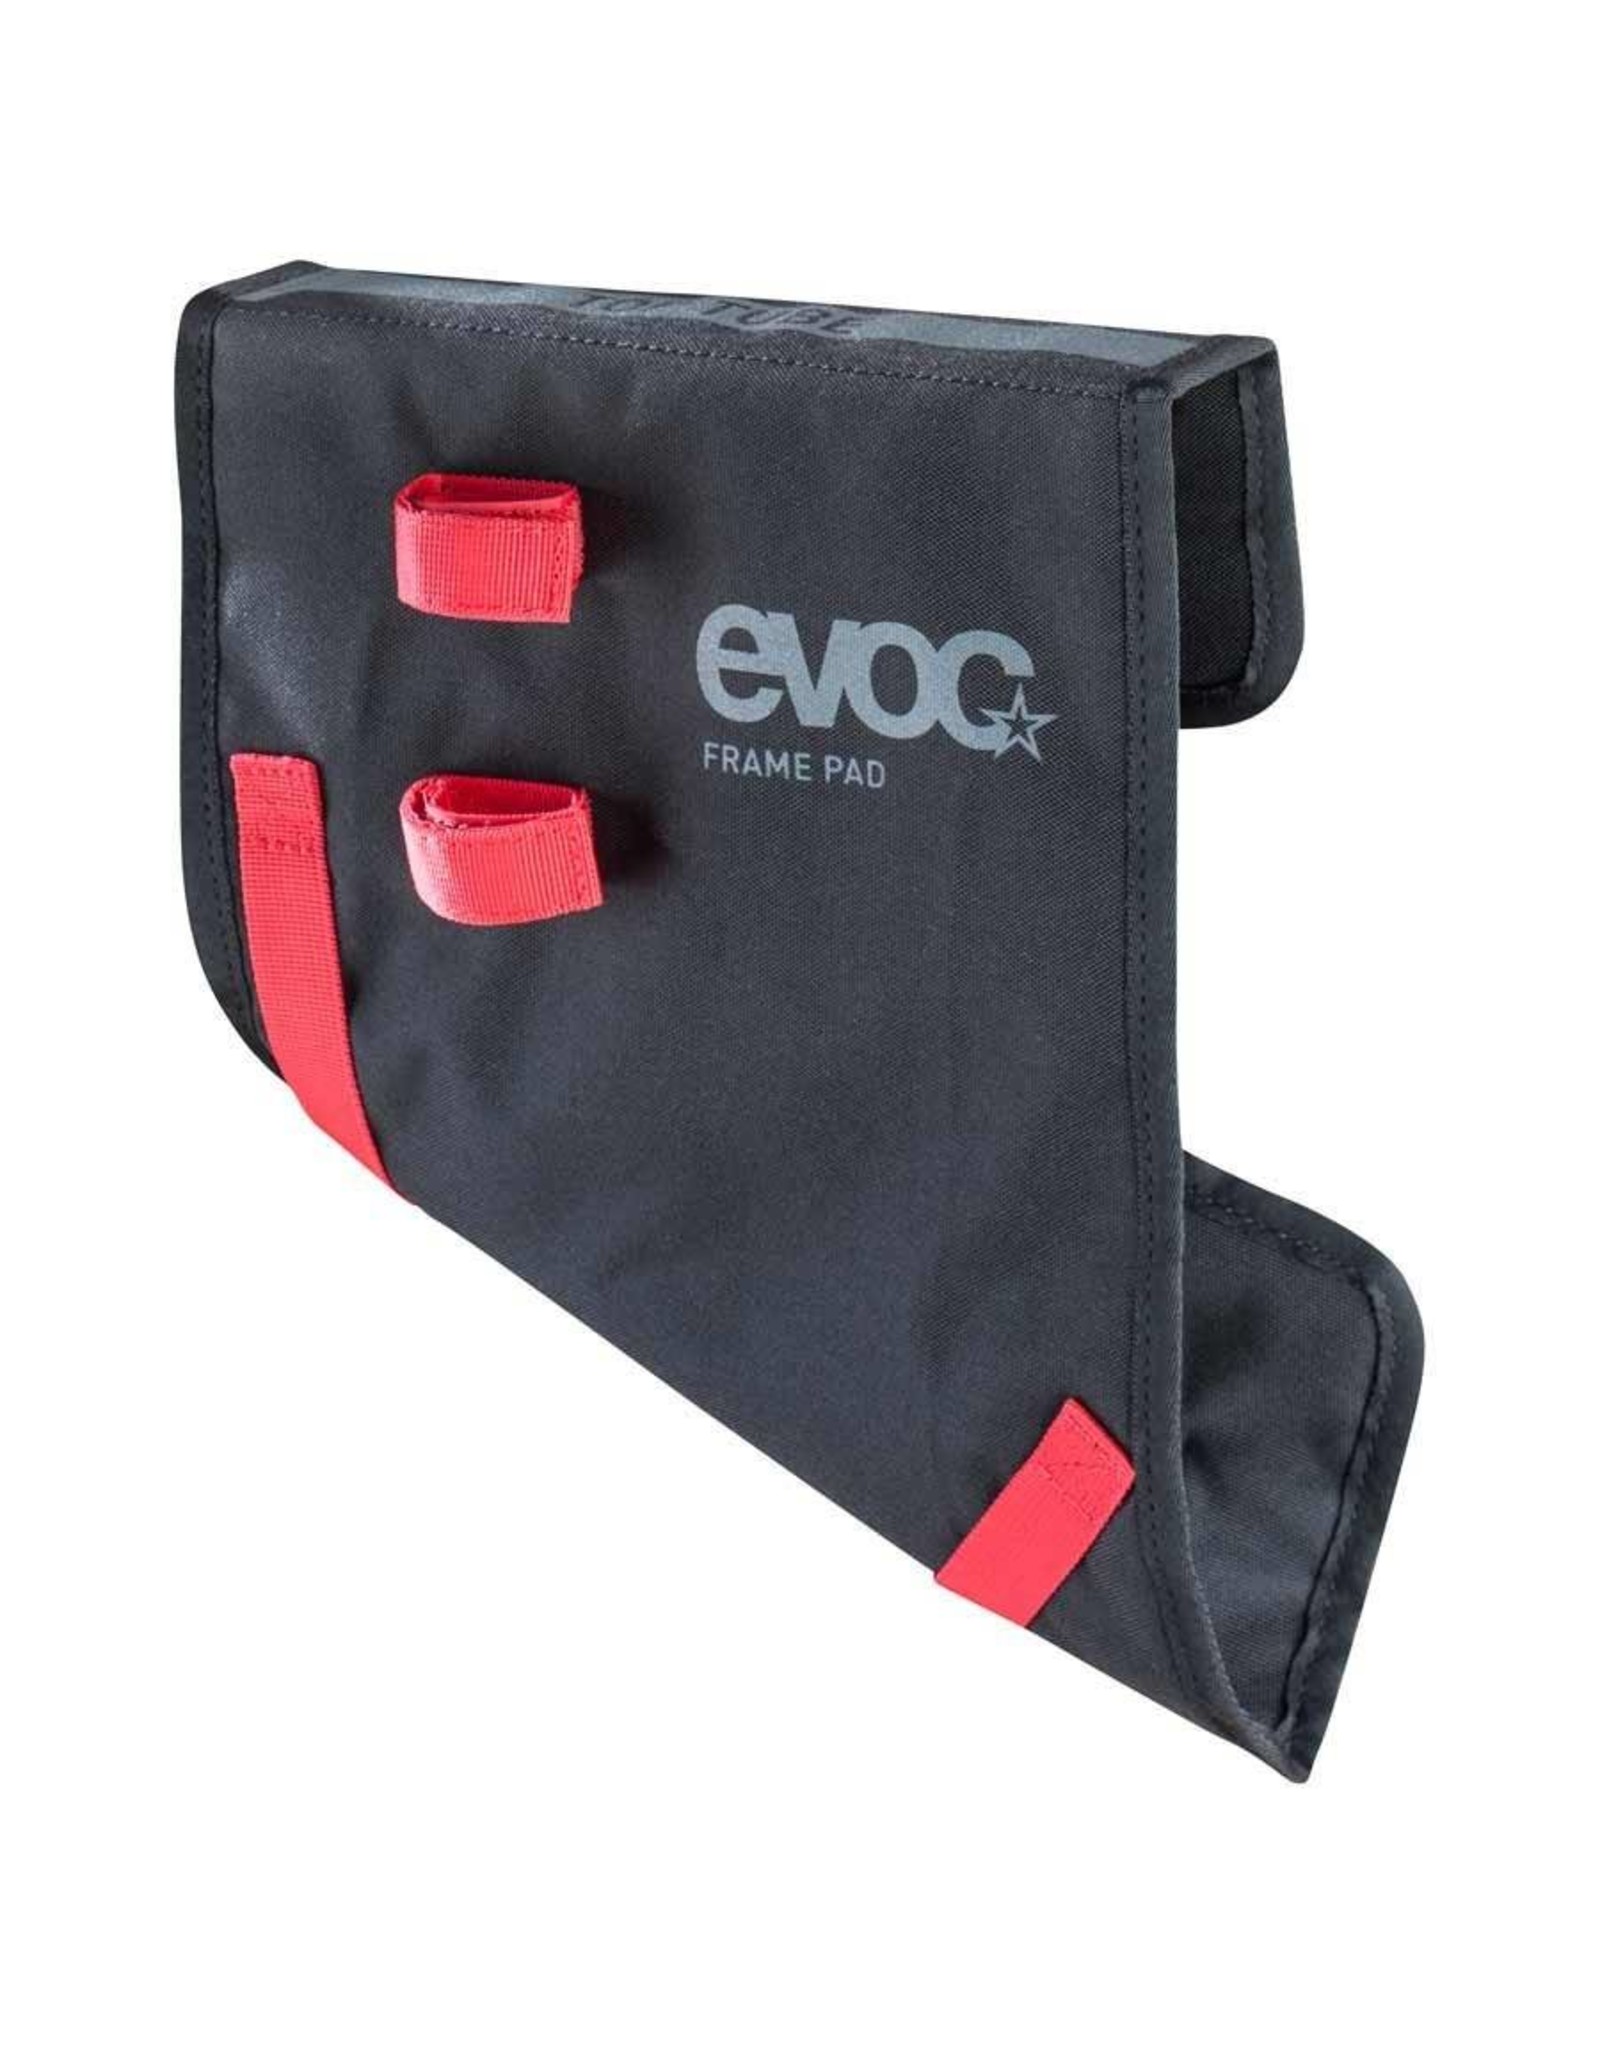 EVOC EVOC, Frame Pad for Travel Bag